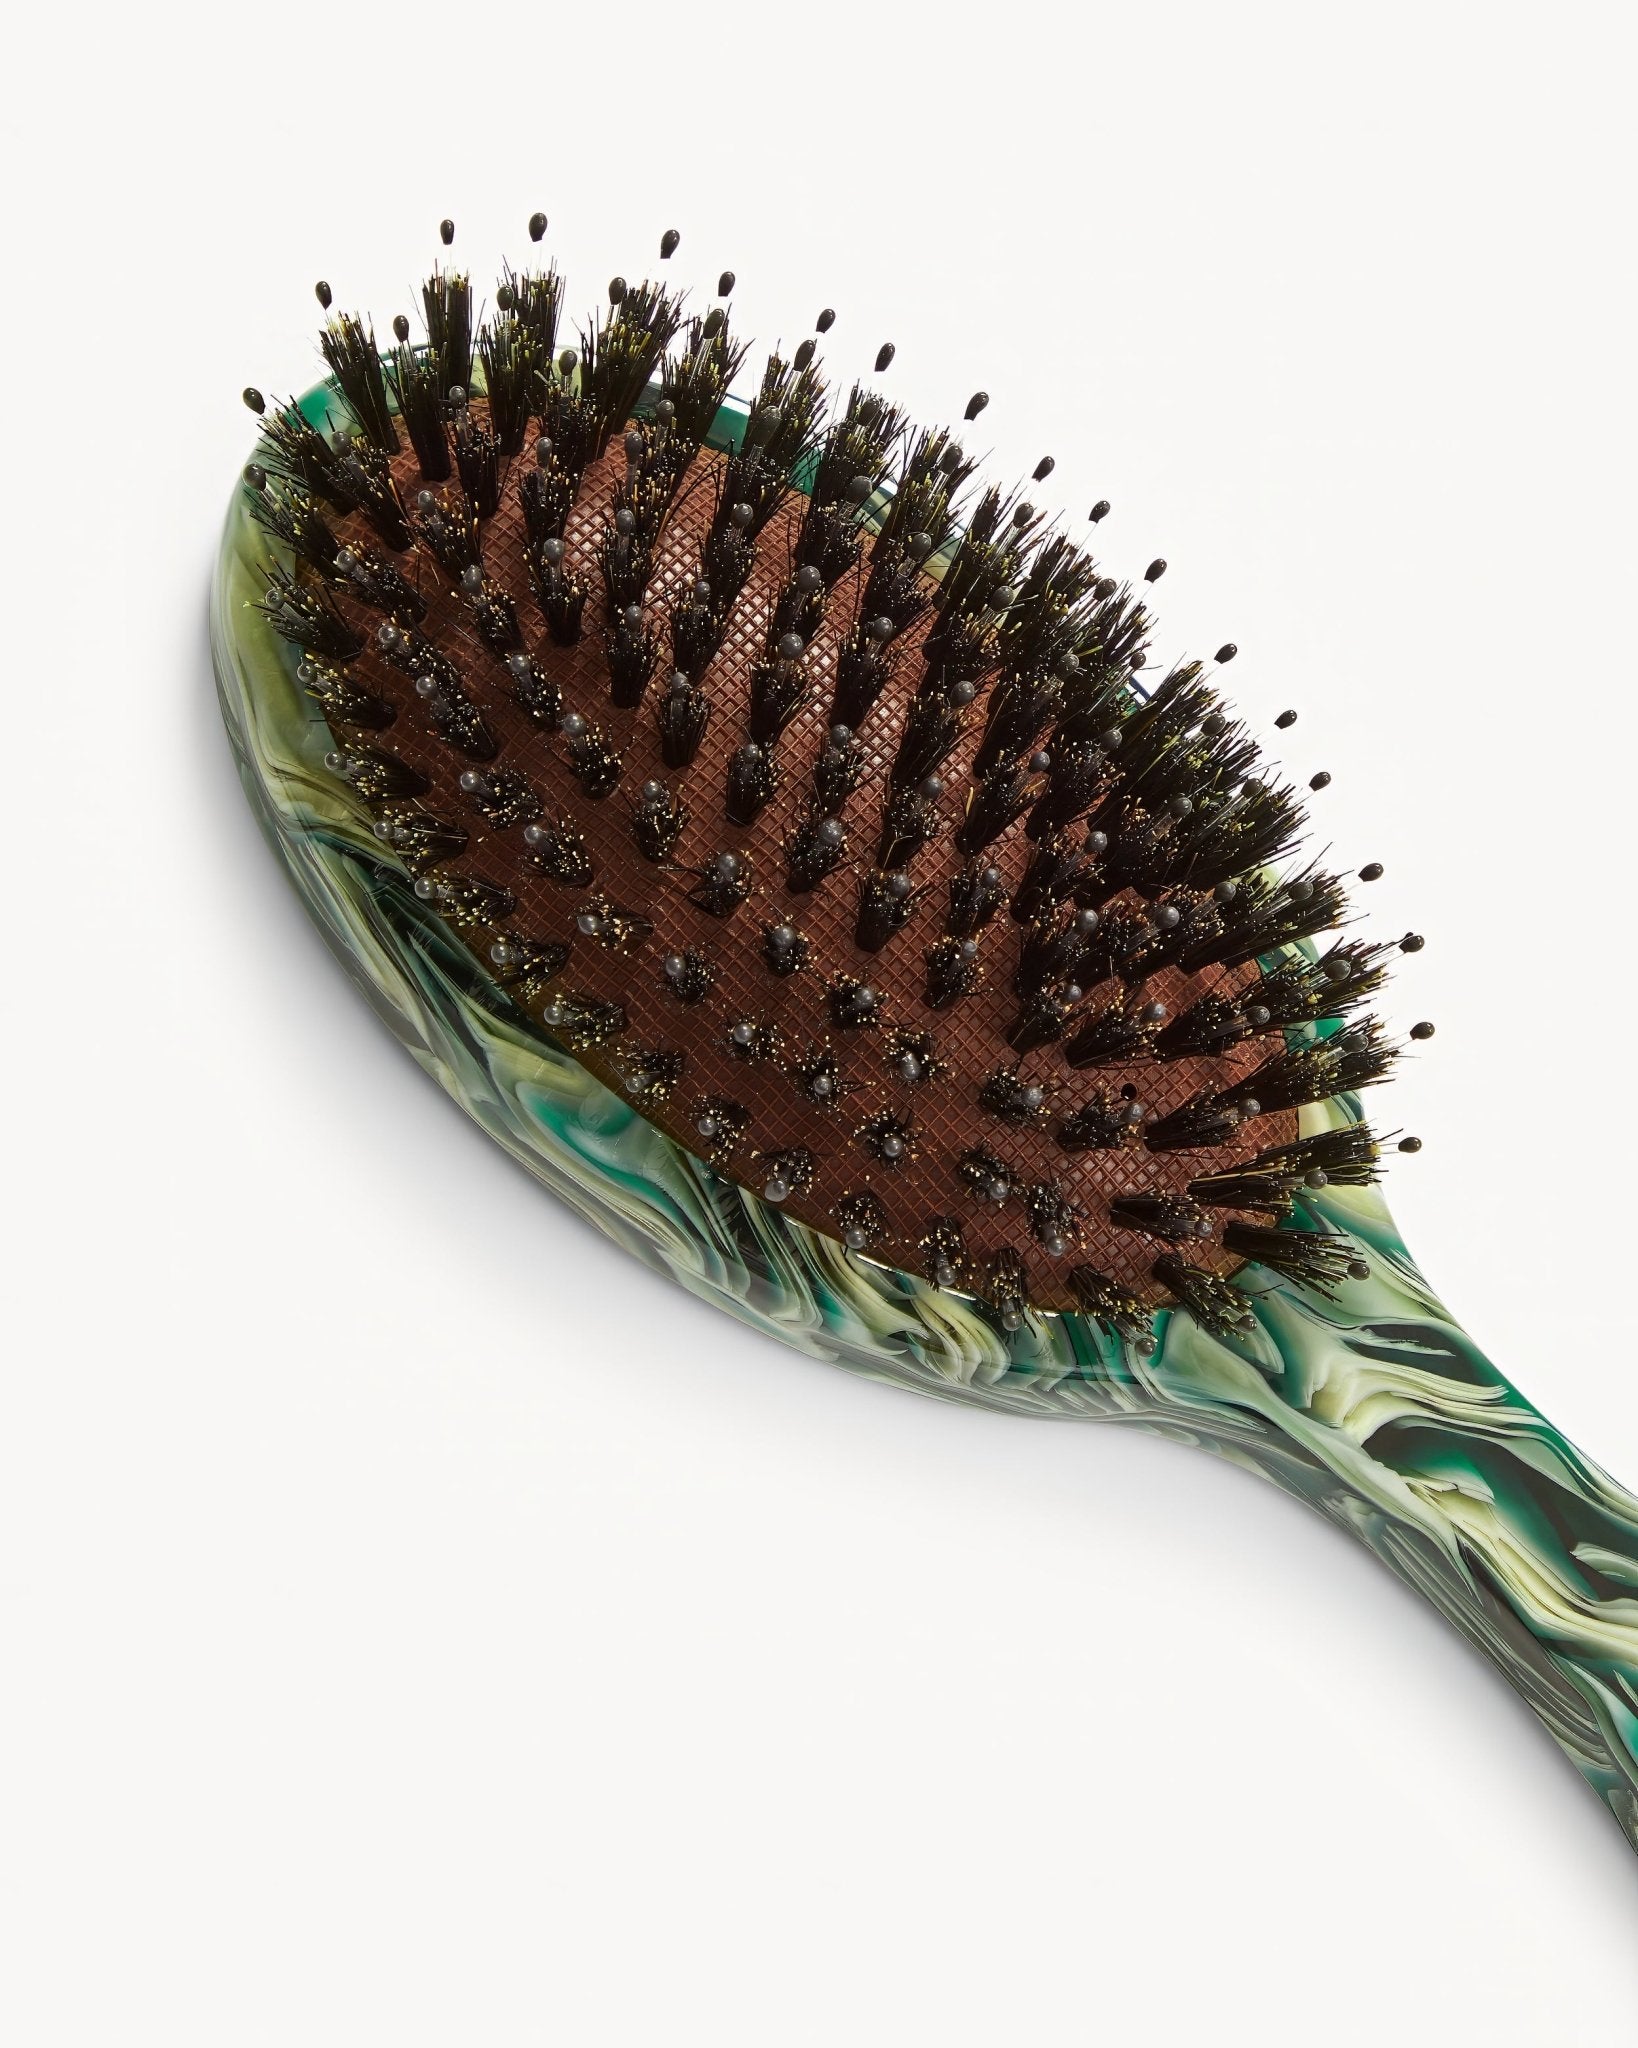 MACHETE Everyday Hair Brush in Stromanthe